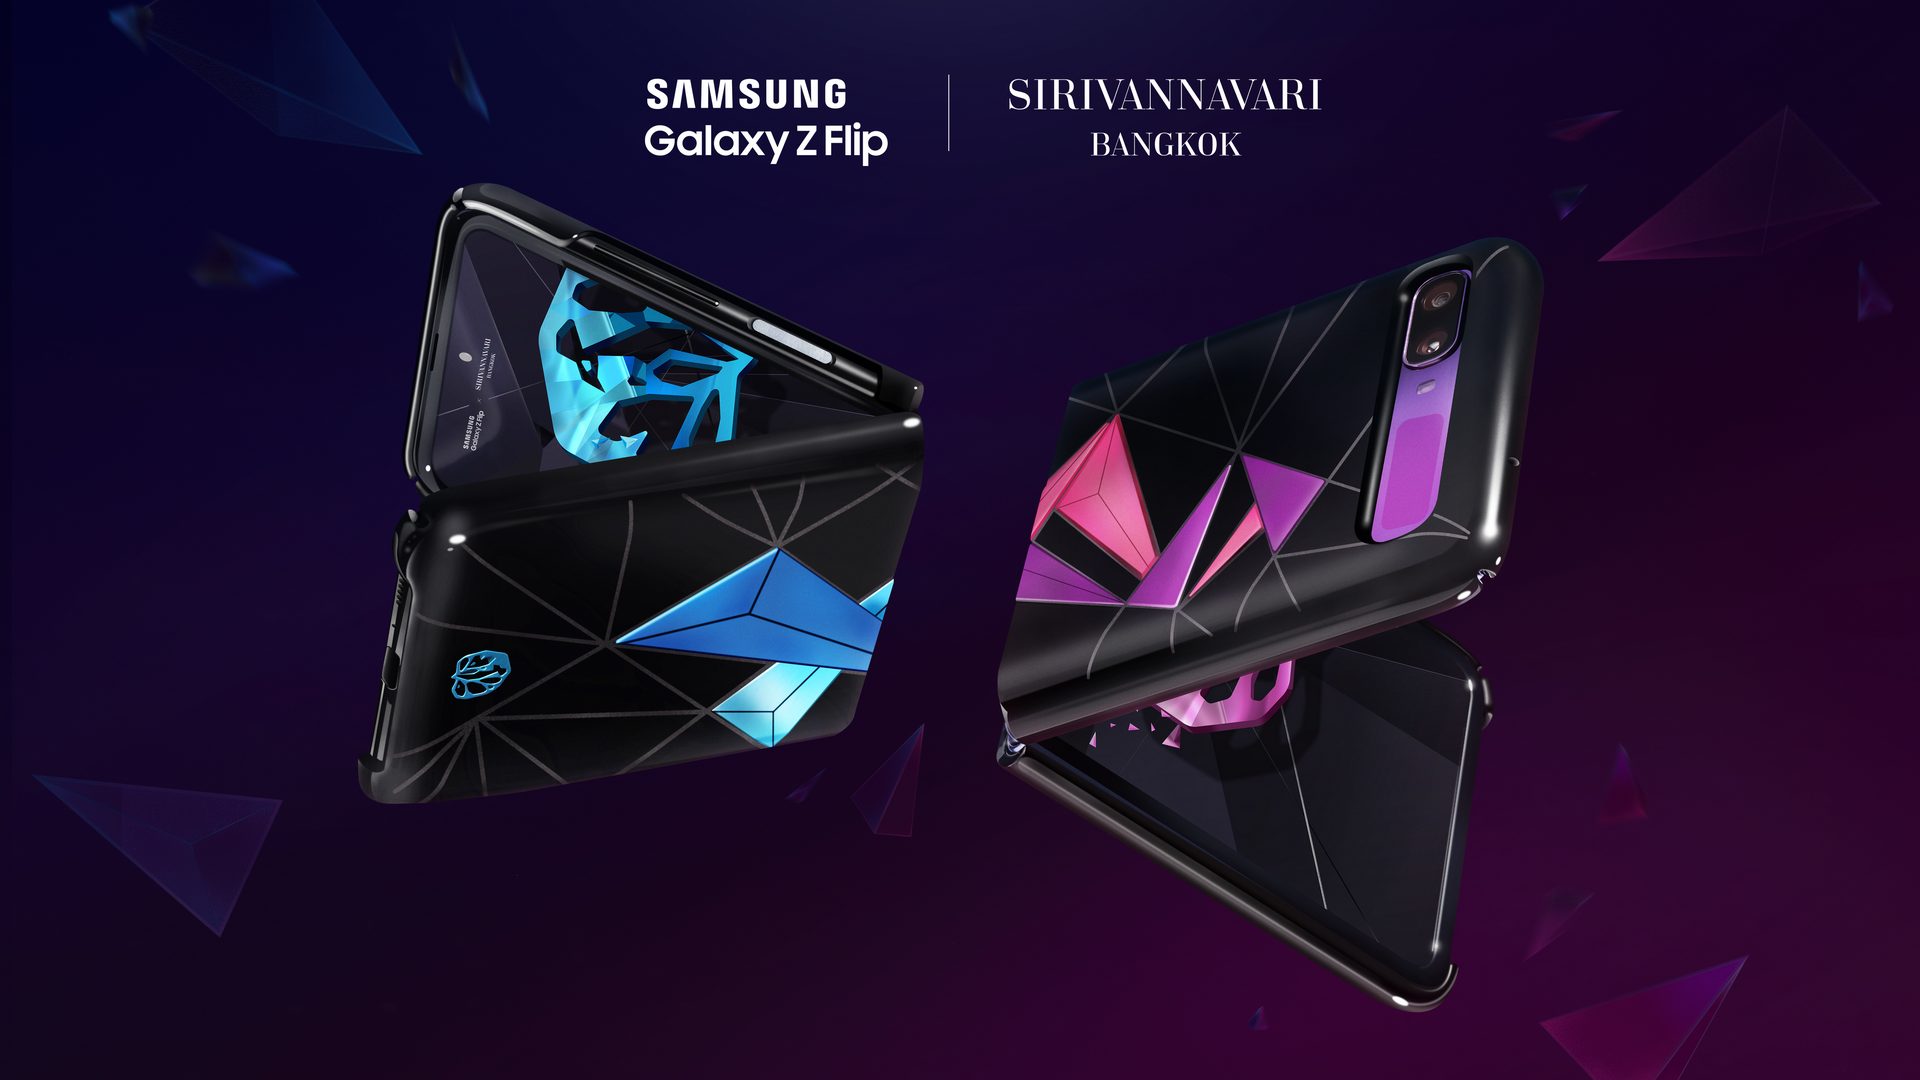 ซัมซุงพร้อมวางจำหน่ายบ็อกซ์เซ็ตคอลเลคชันพิเศษ  “Galaxy Z Flip x SIRIVANNAVARI BANGKOK Special Case Limited Edition”